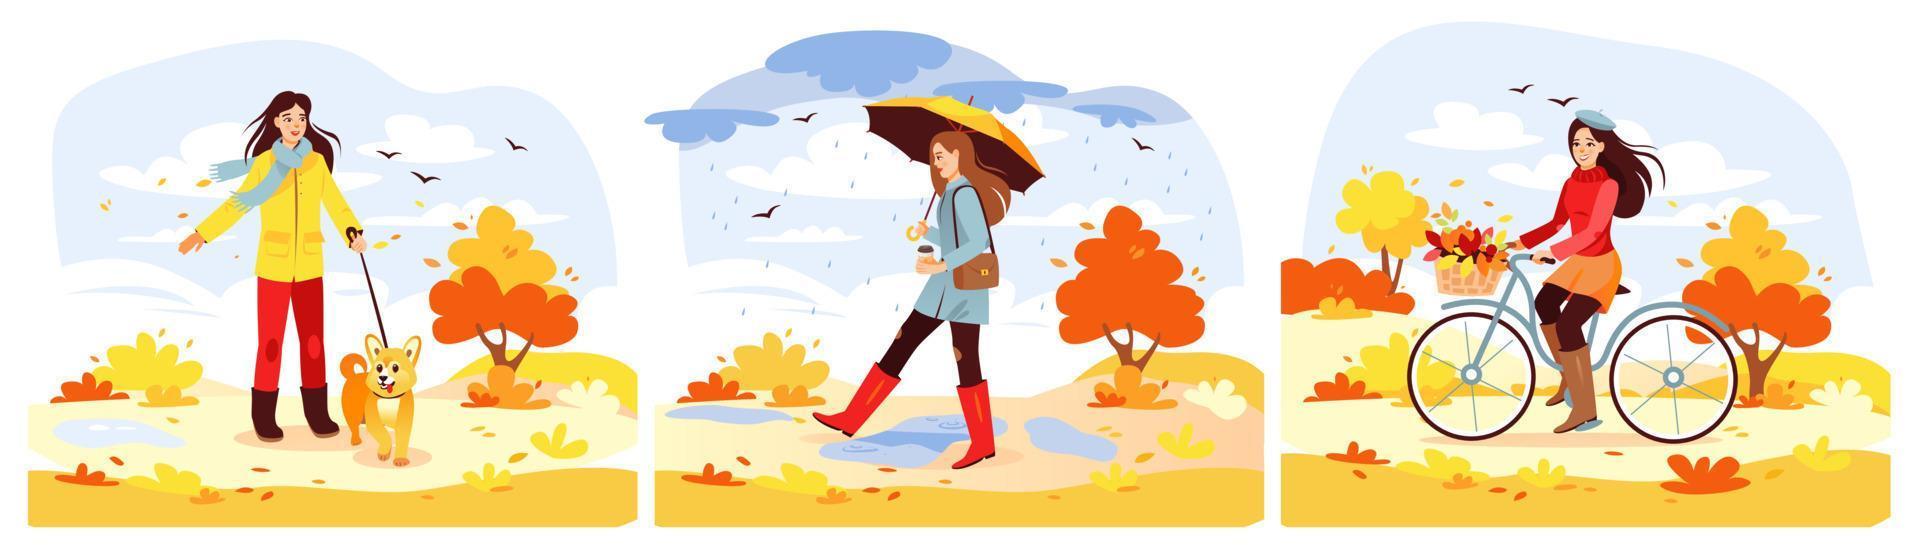 parque de outono. um conjunto de meninas andando no parque no outono. a garota bebe café, passeia com o cachorro, anda de bicicleta. ilustração vetorial de desenho animado vetor